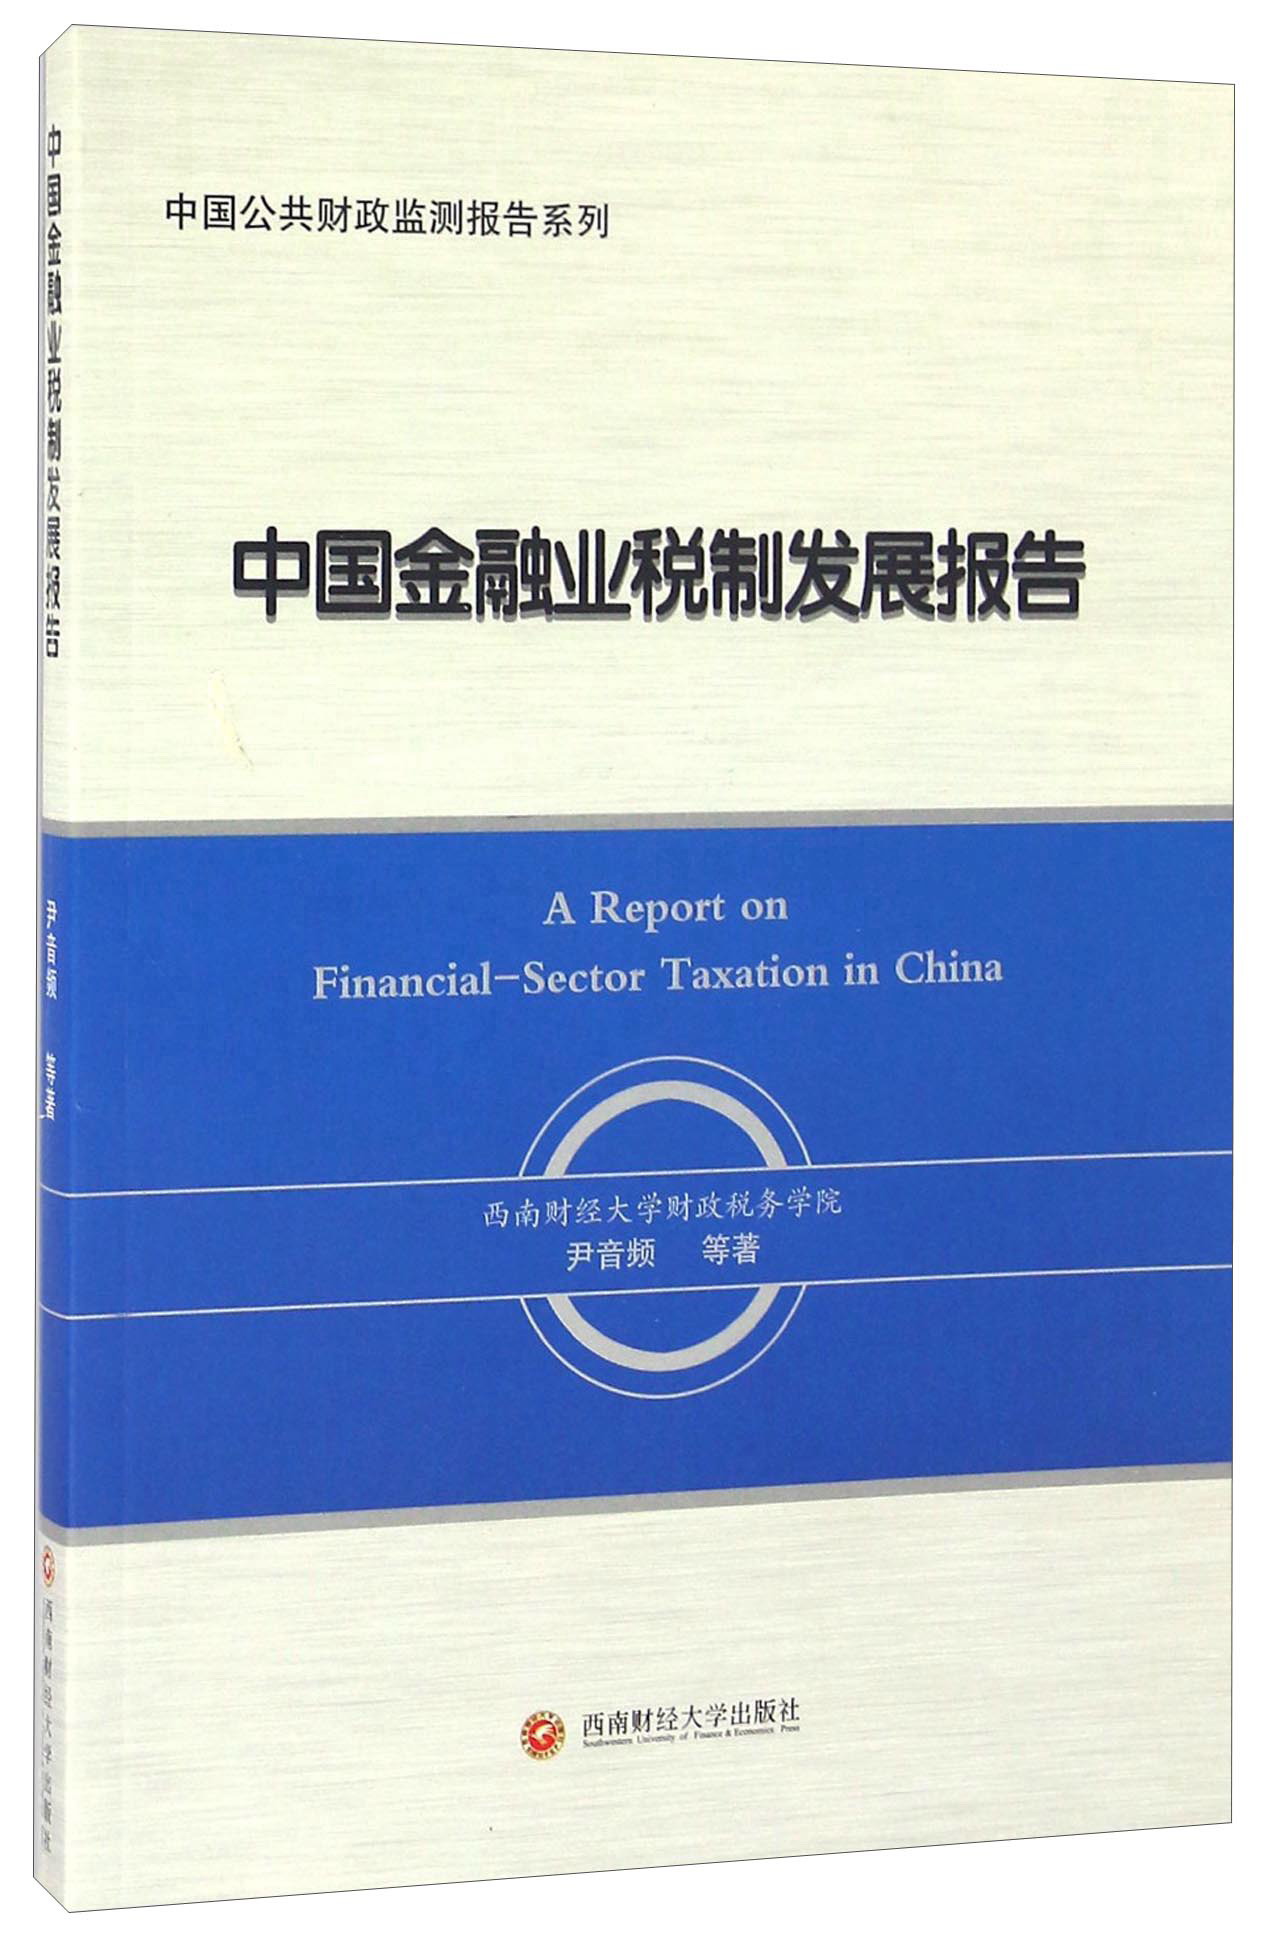 中国金融业税制发展报告 mobi格式下载